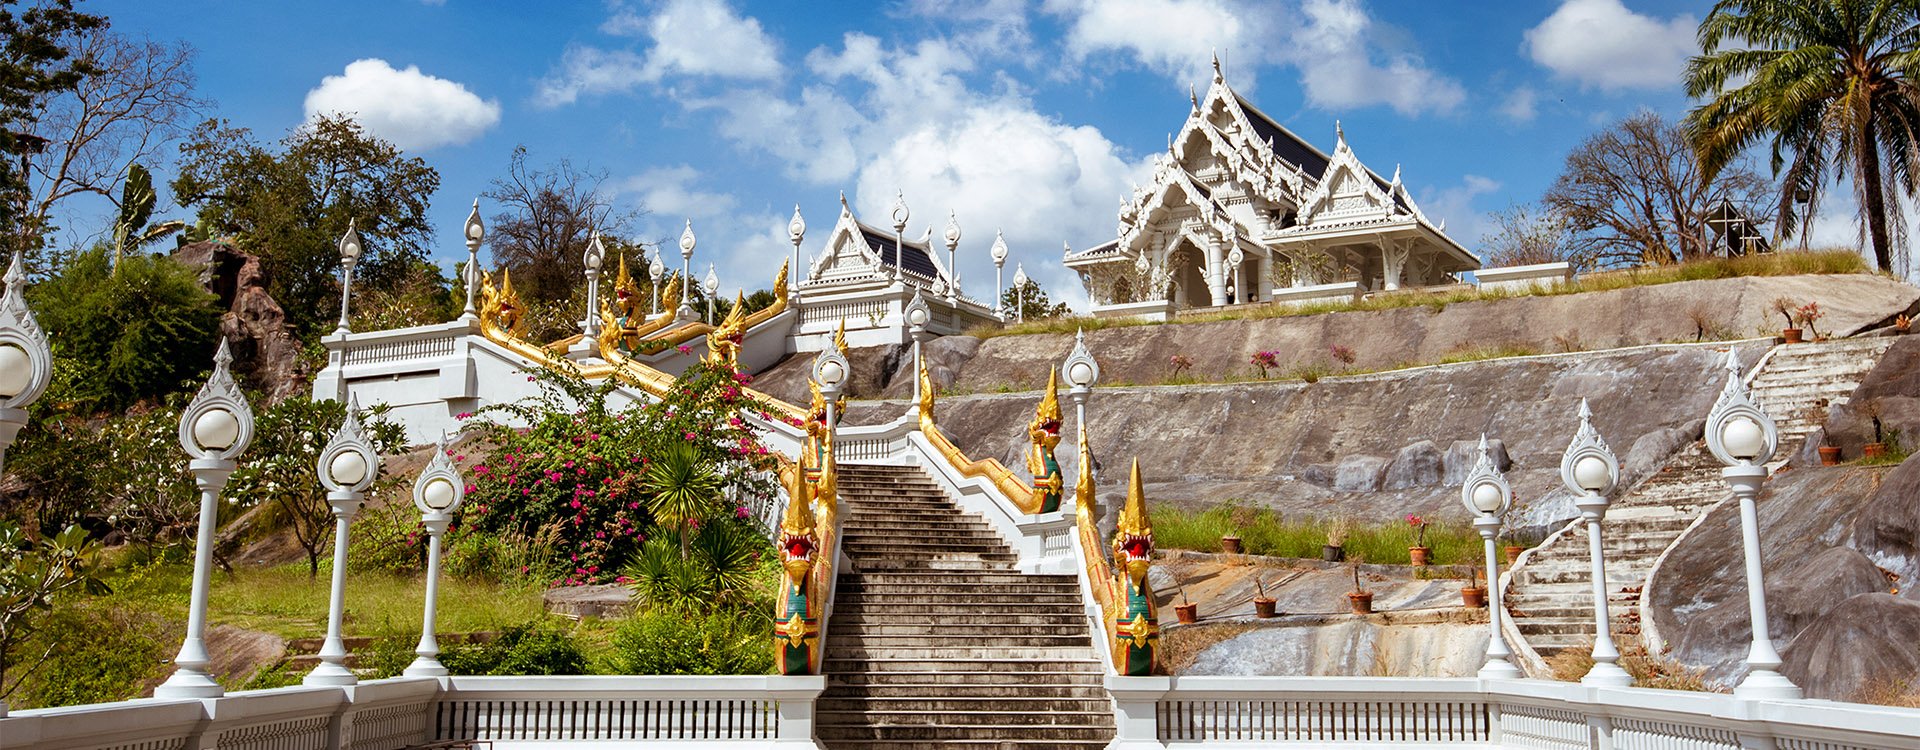 White temple Wat Kaew Korawaram in Krabi town. Krabi province. Thailand